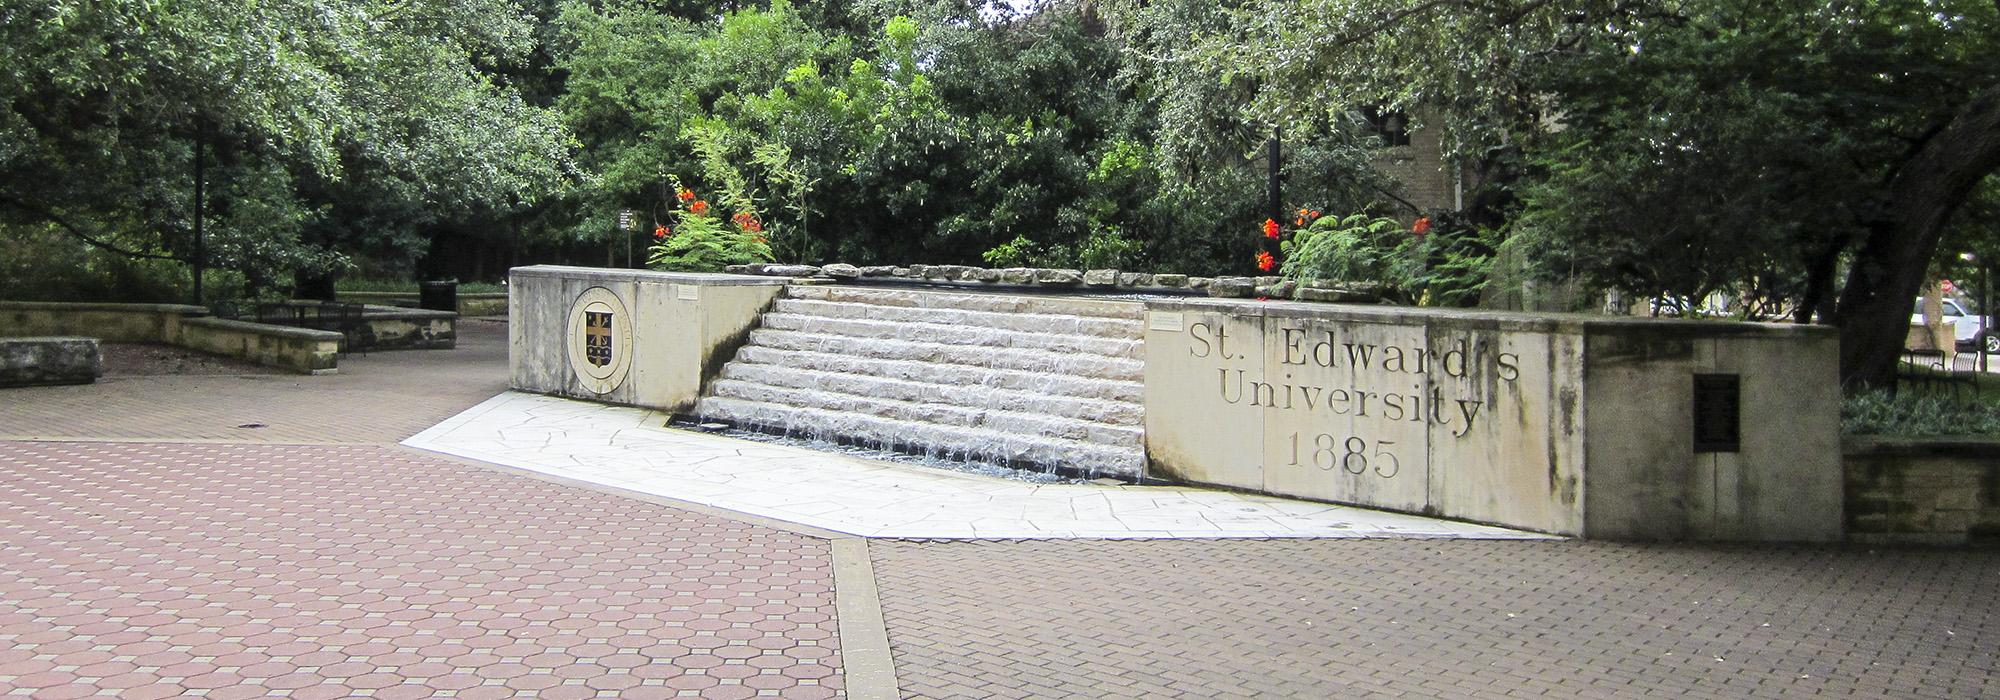 St. Edward's University, Austin, TX